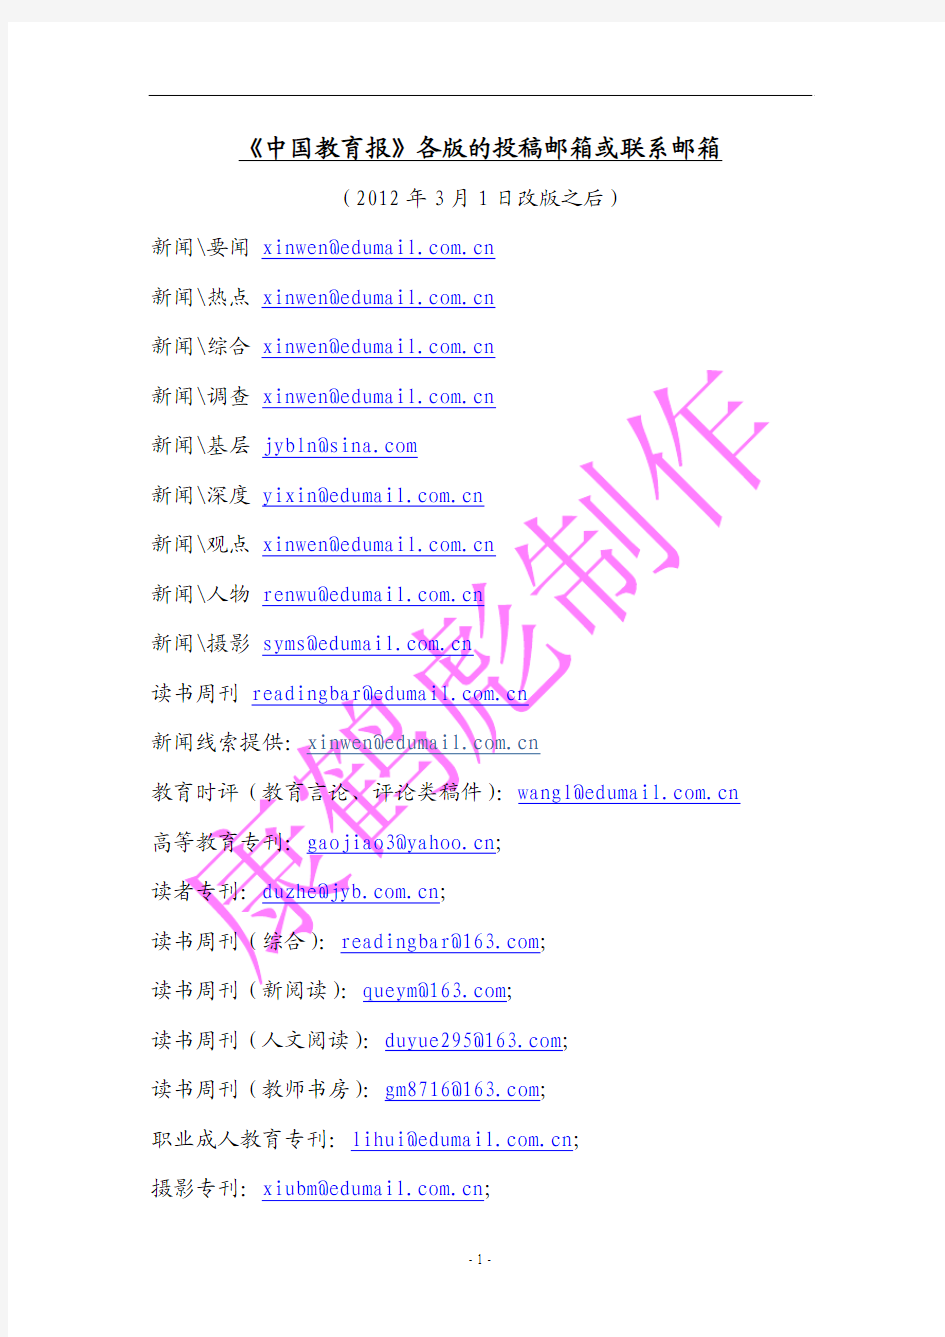 《中国教育报》各版的投稿邮箱或联系邮箱(2012年3月1日改版之后)